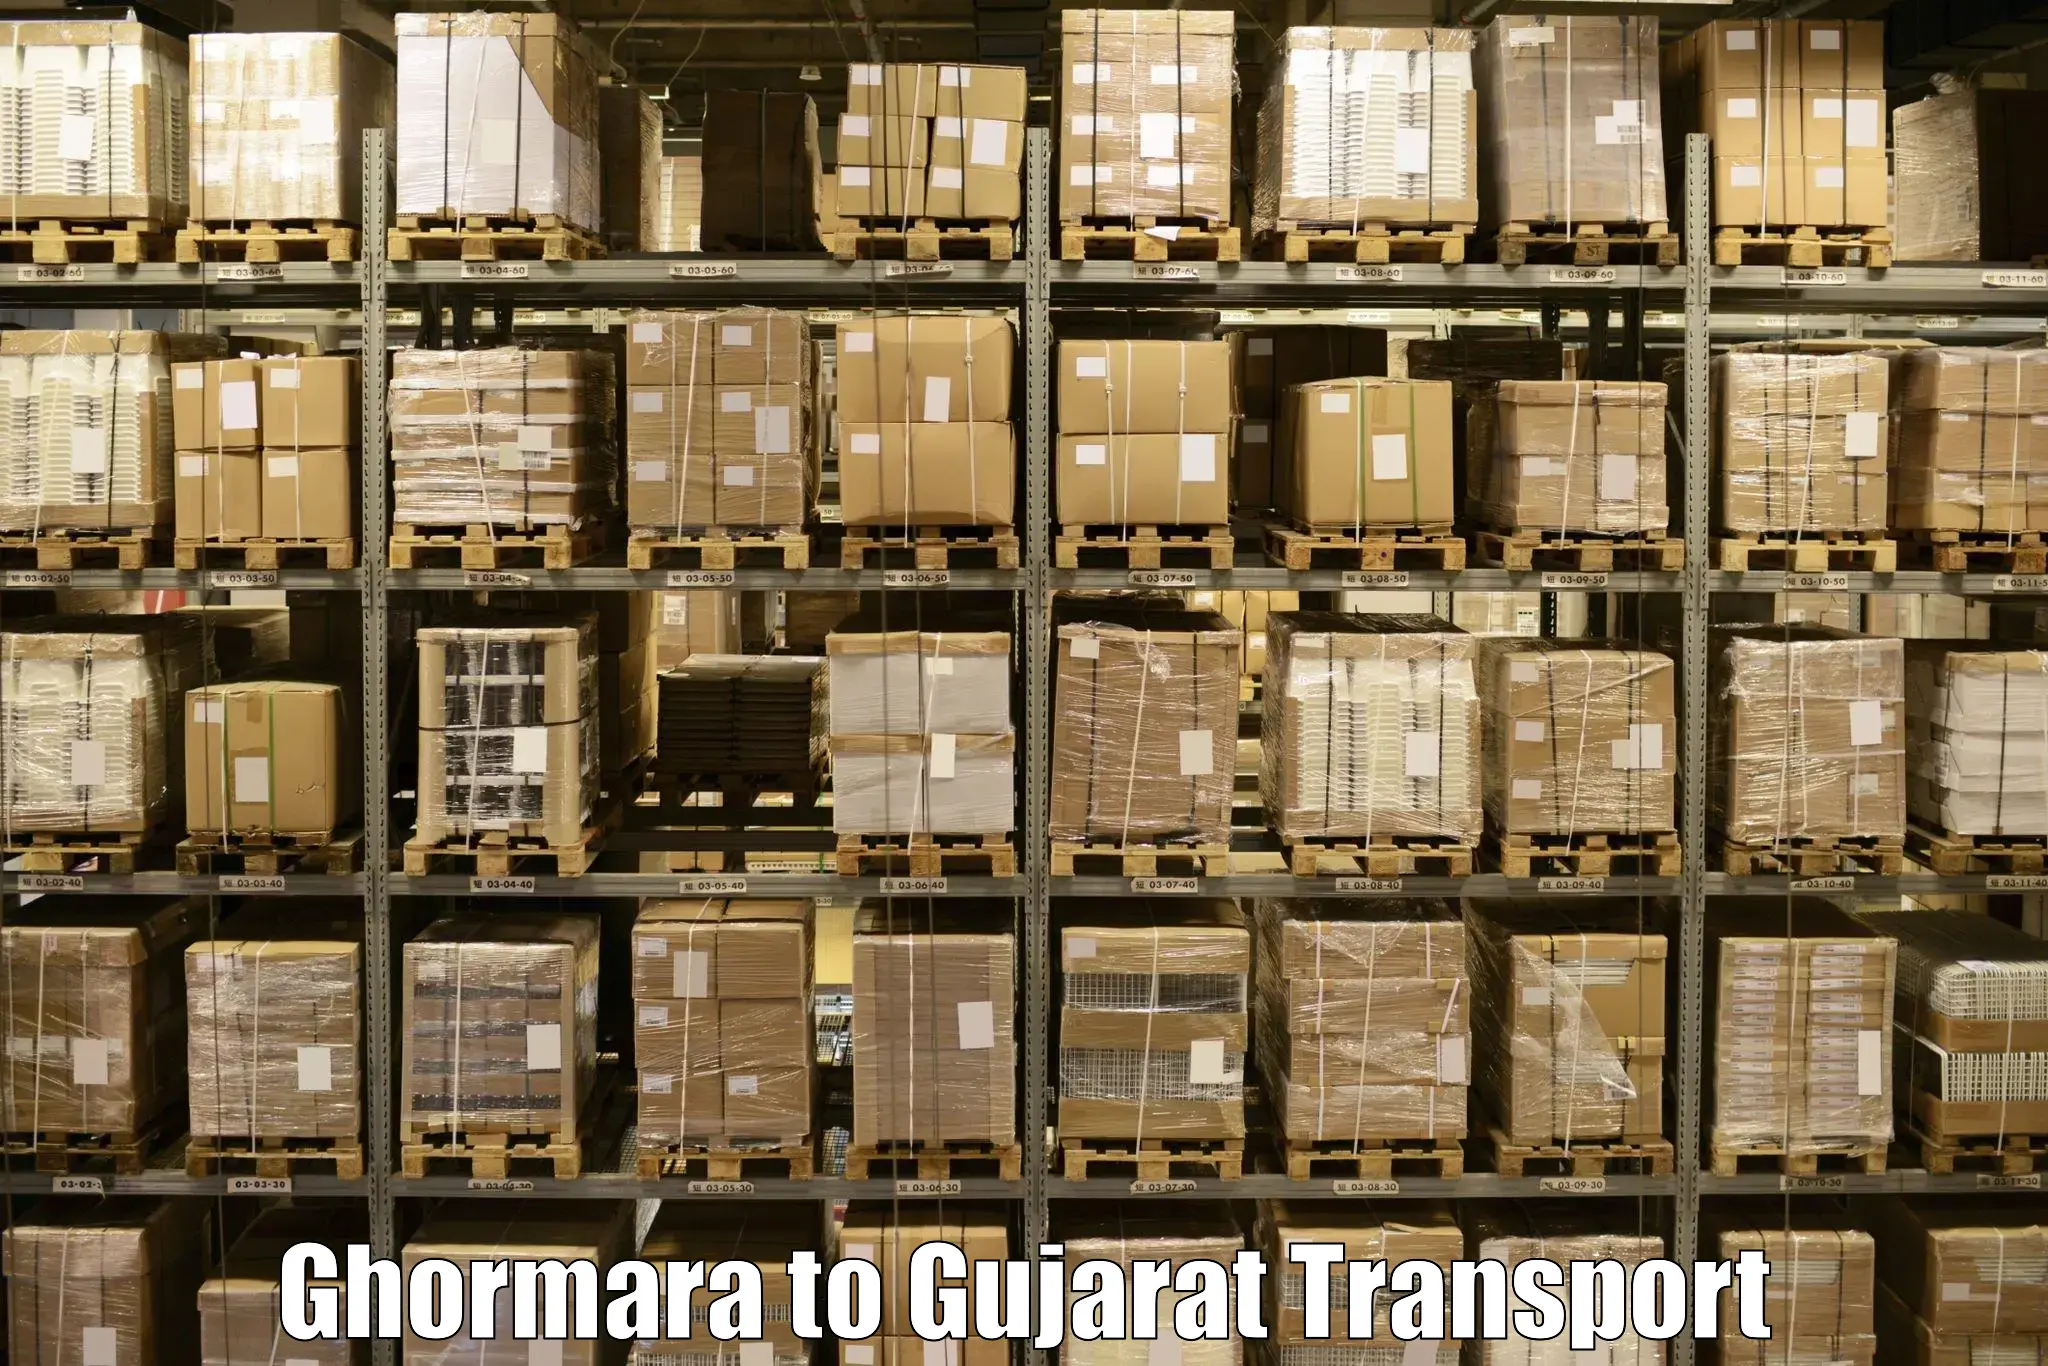 Cargo train transport services Ghormara to Halvad